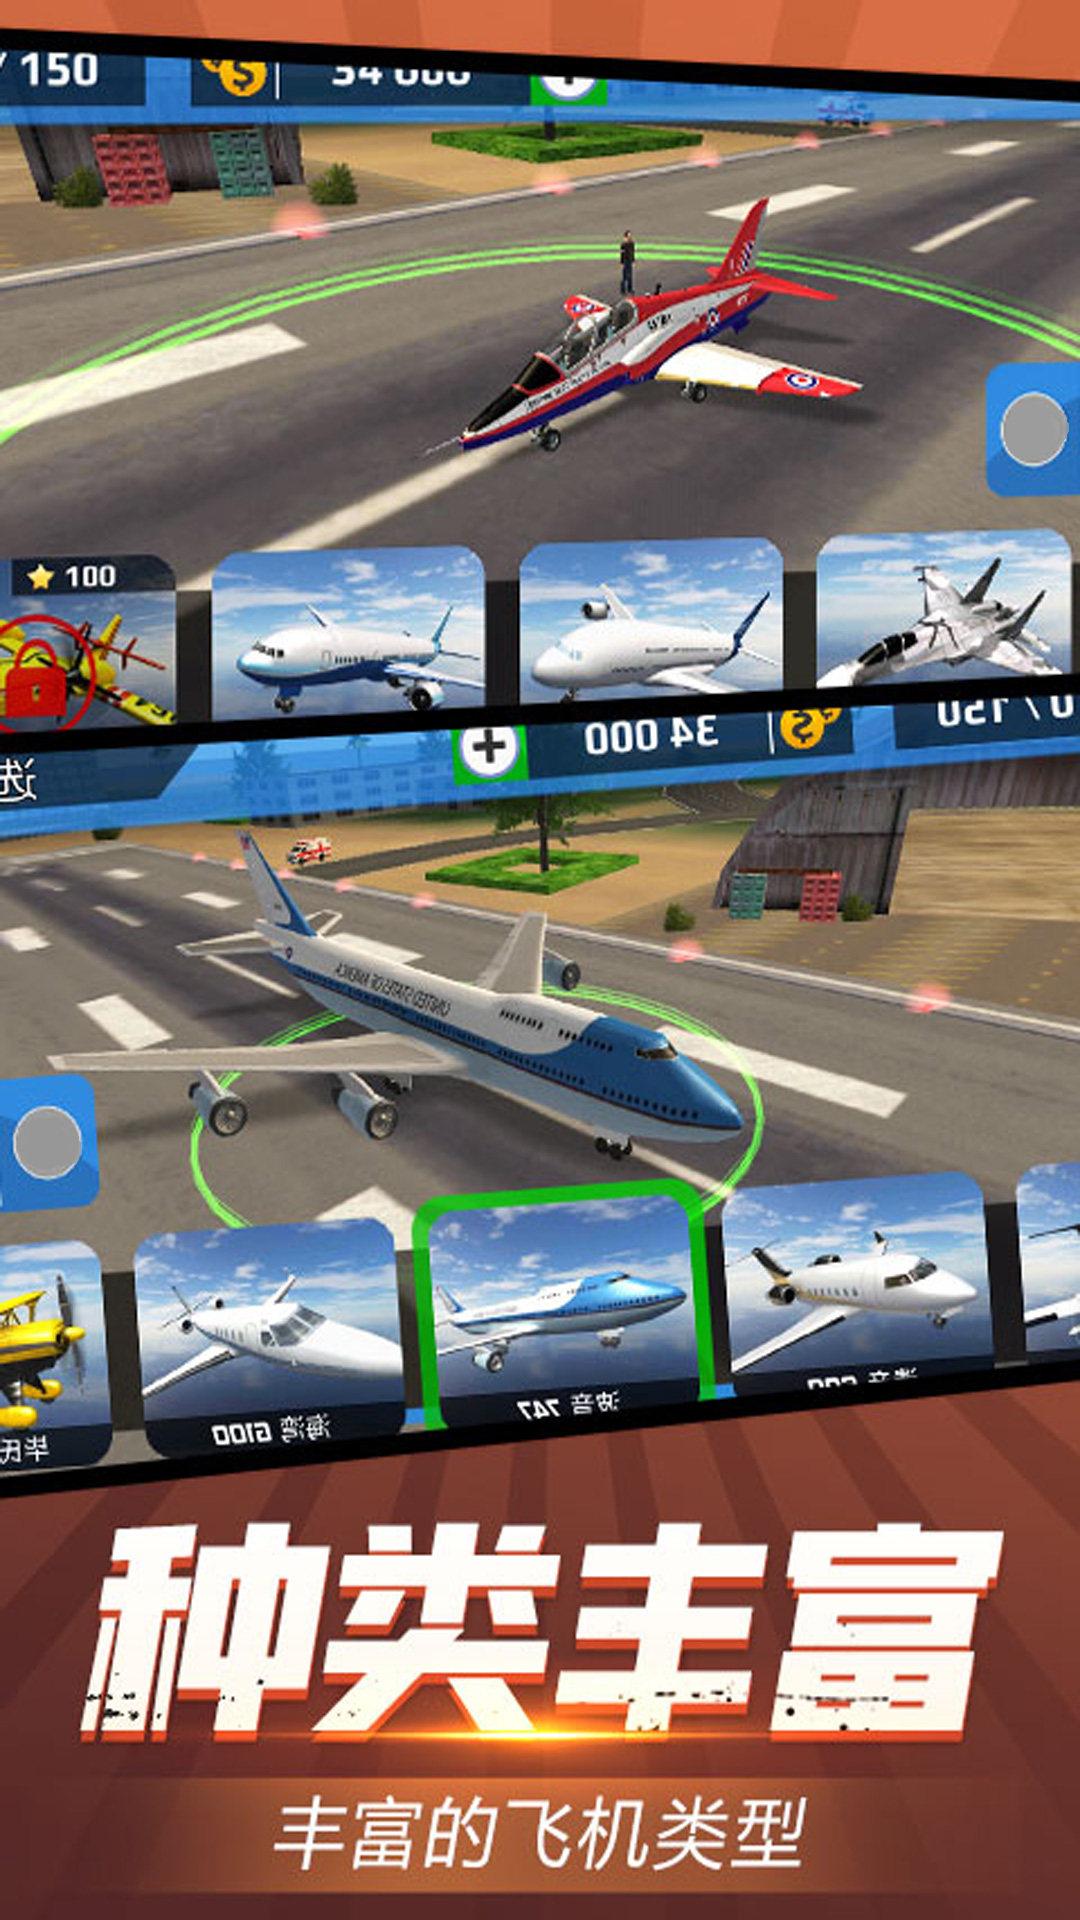 安全飞行模拟器游戏官方手机版截图1: